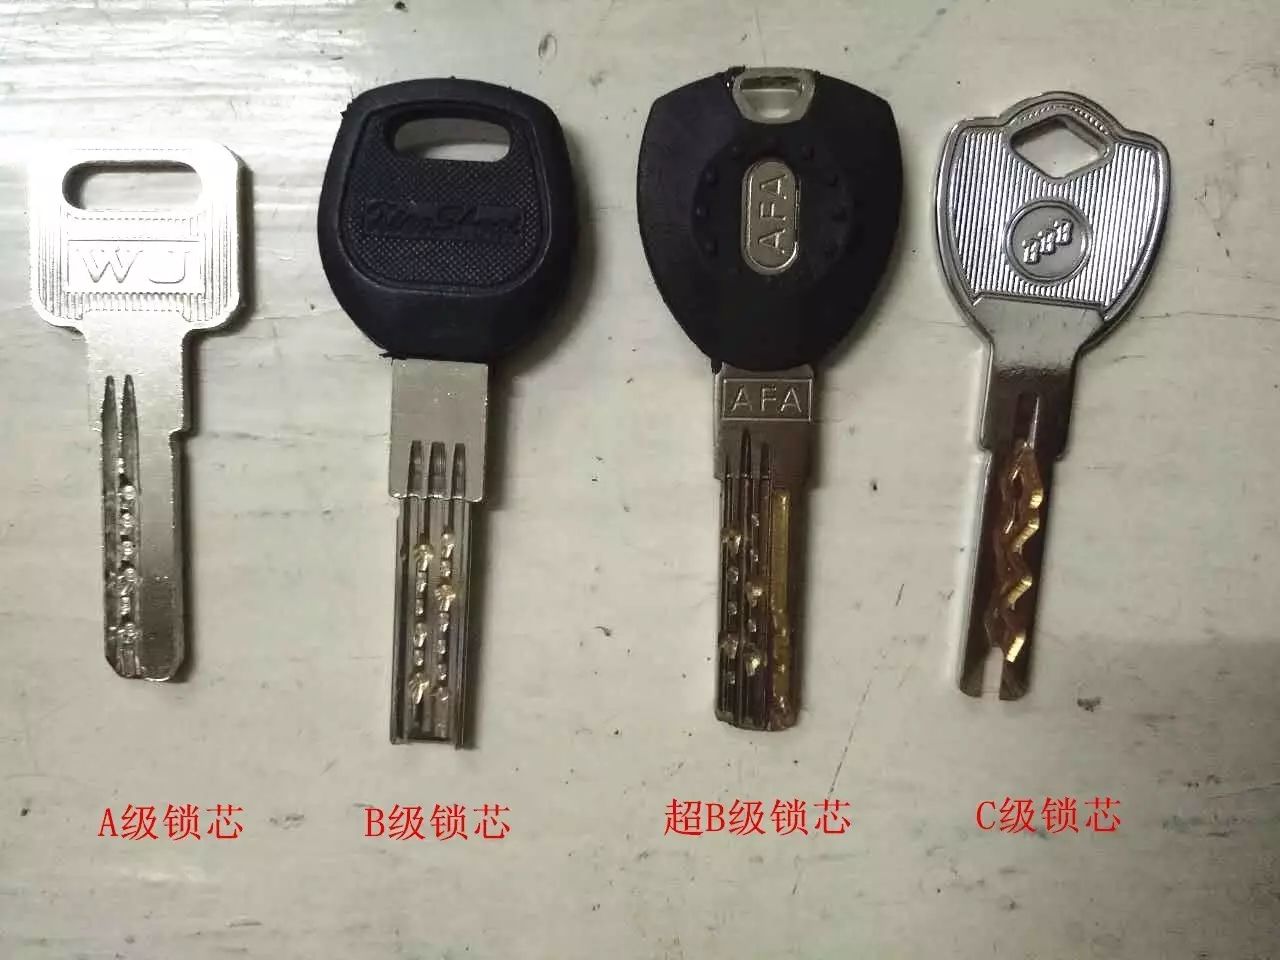 这些钥匙只是其中一部分哦!